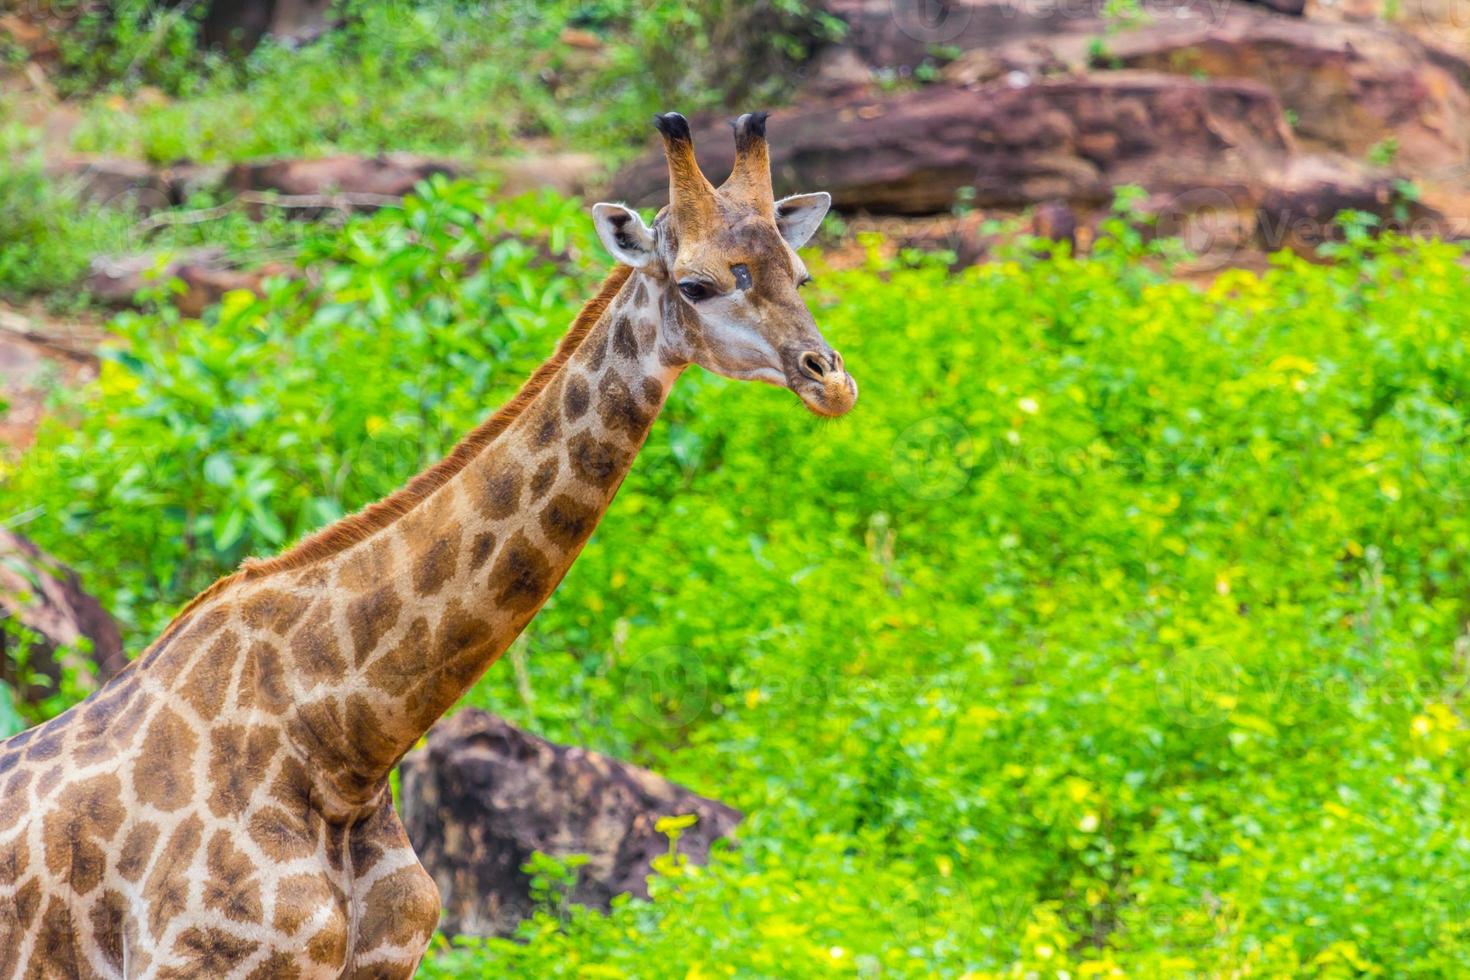 Face Masai giraffe photo